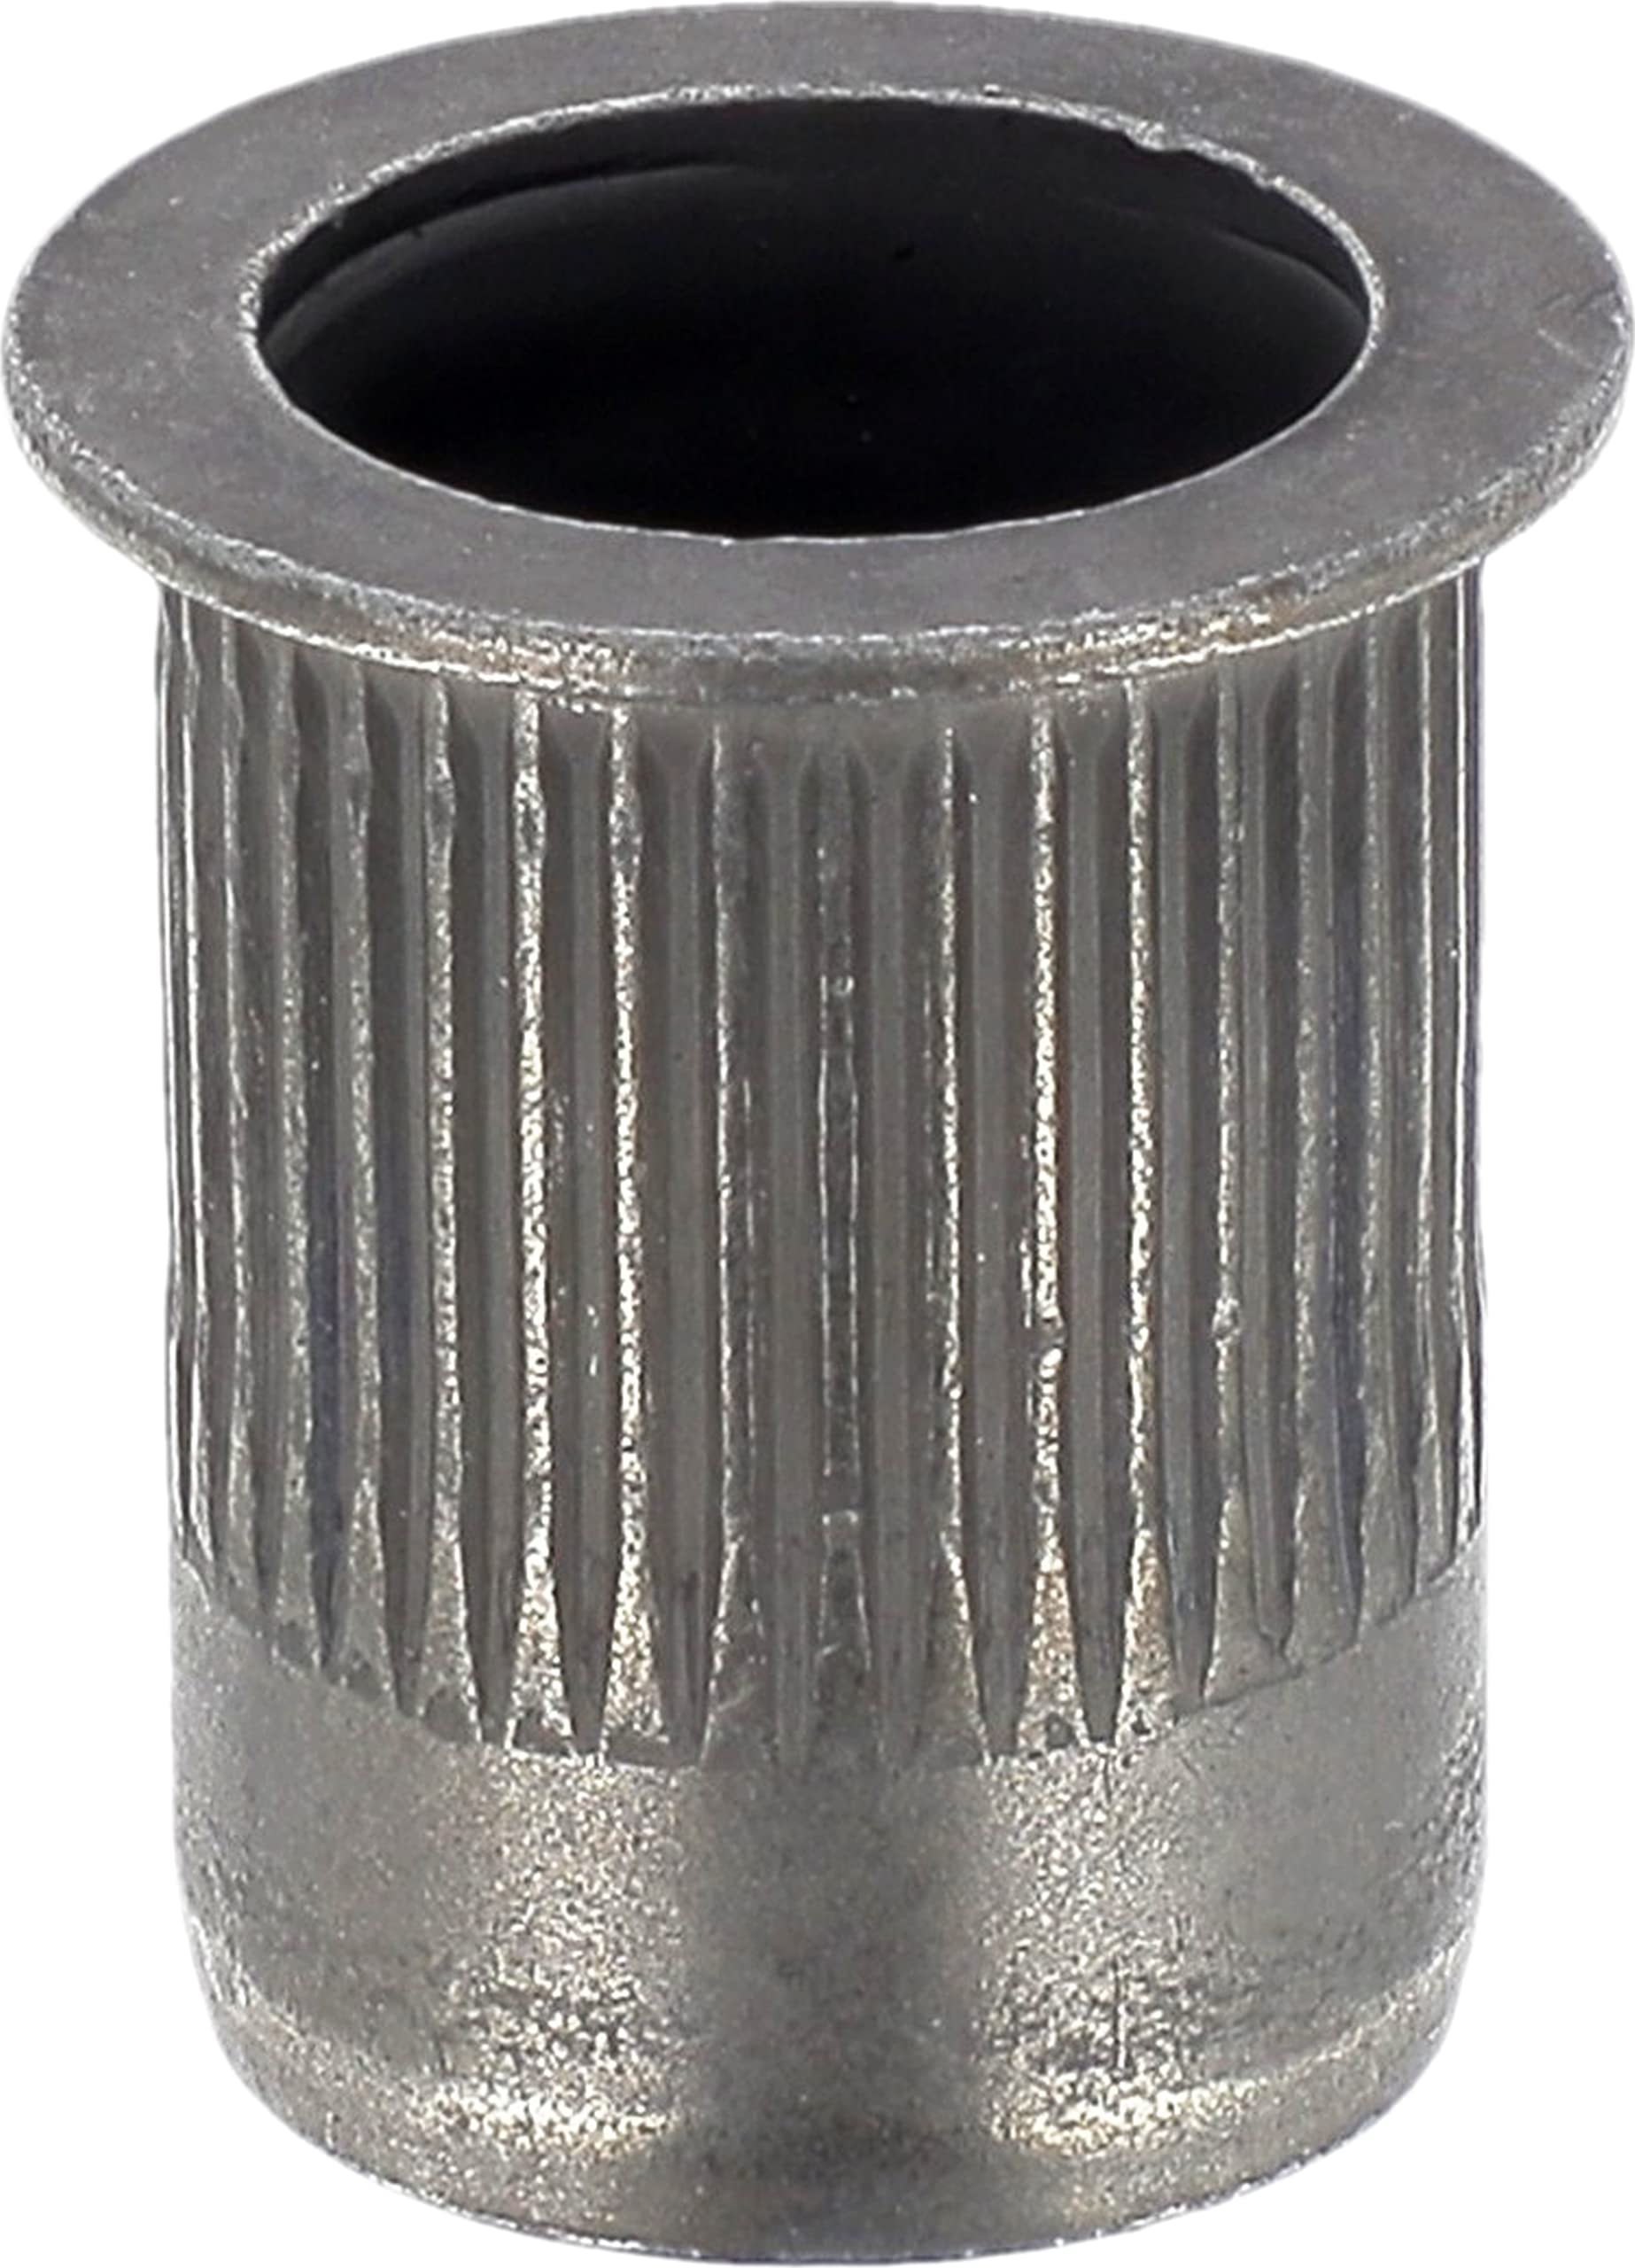 Crimpmutter aus Stahl, rund, für Fahrzeuge Renault, M6-1.00, 0,5-3 mm, Blechstärke, 15 Stück von Restagraf